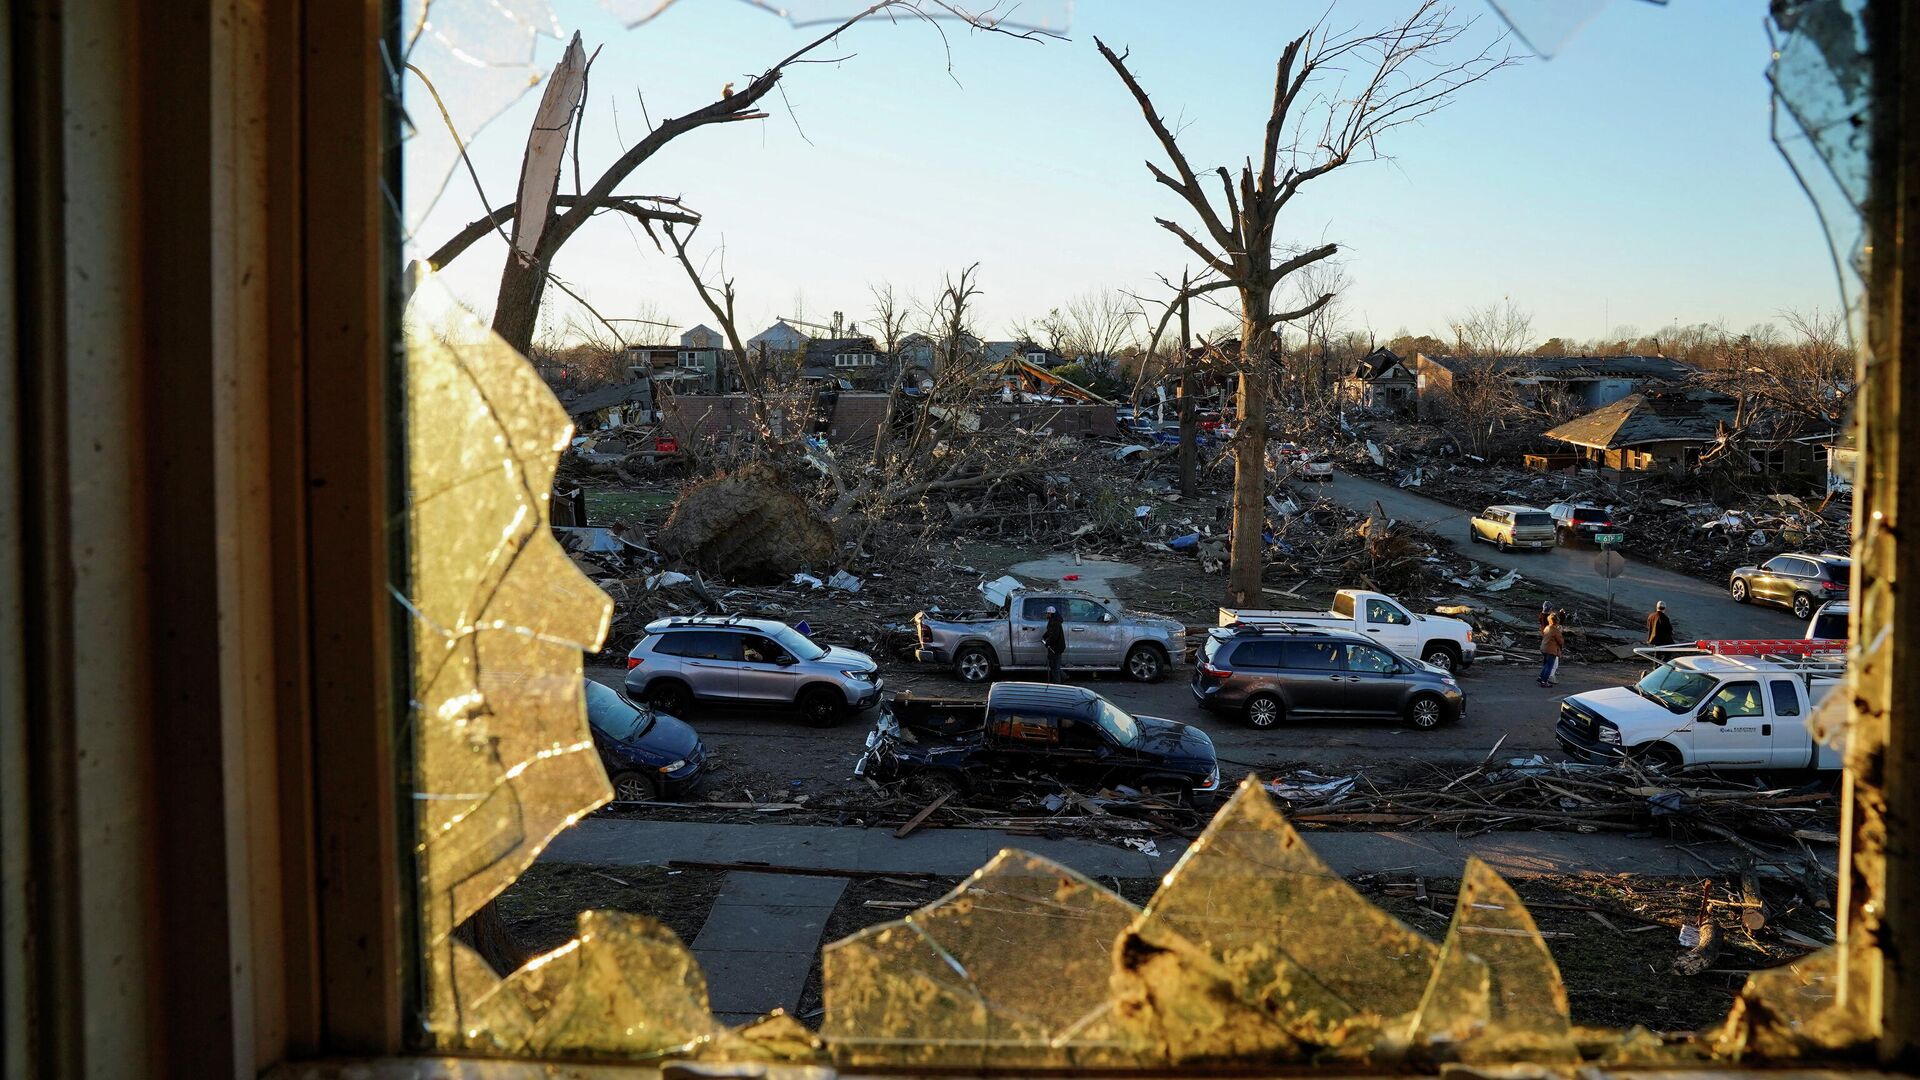 Последствия разрушительного торнадо в городе Мейфилд, штат Кентукки, США  - Sputnik Latvija, 1920, 12.12.2021